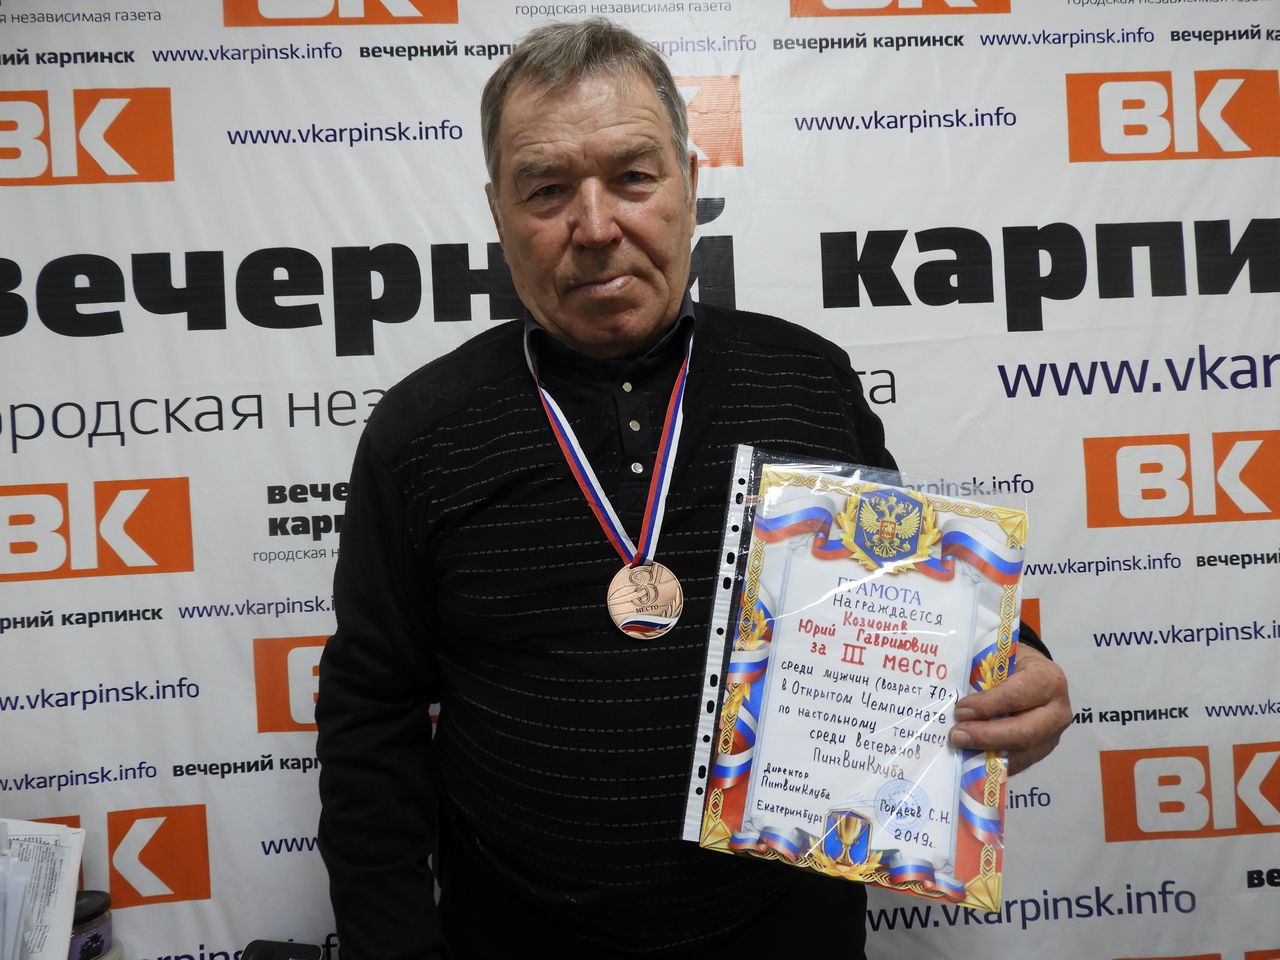 Карпинский спортсмен попал в ДТП, когда ехал на соревнования в Екатеринбург